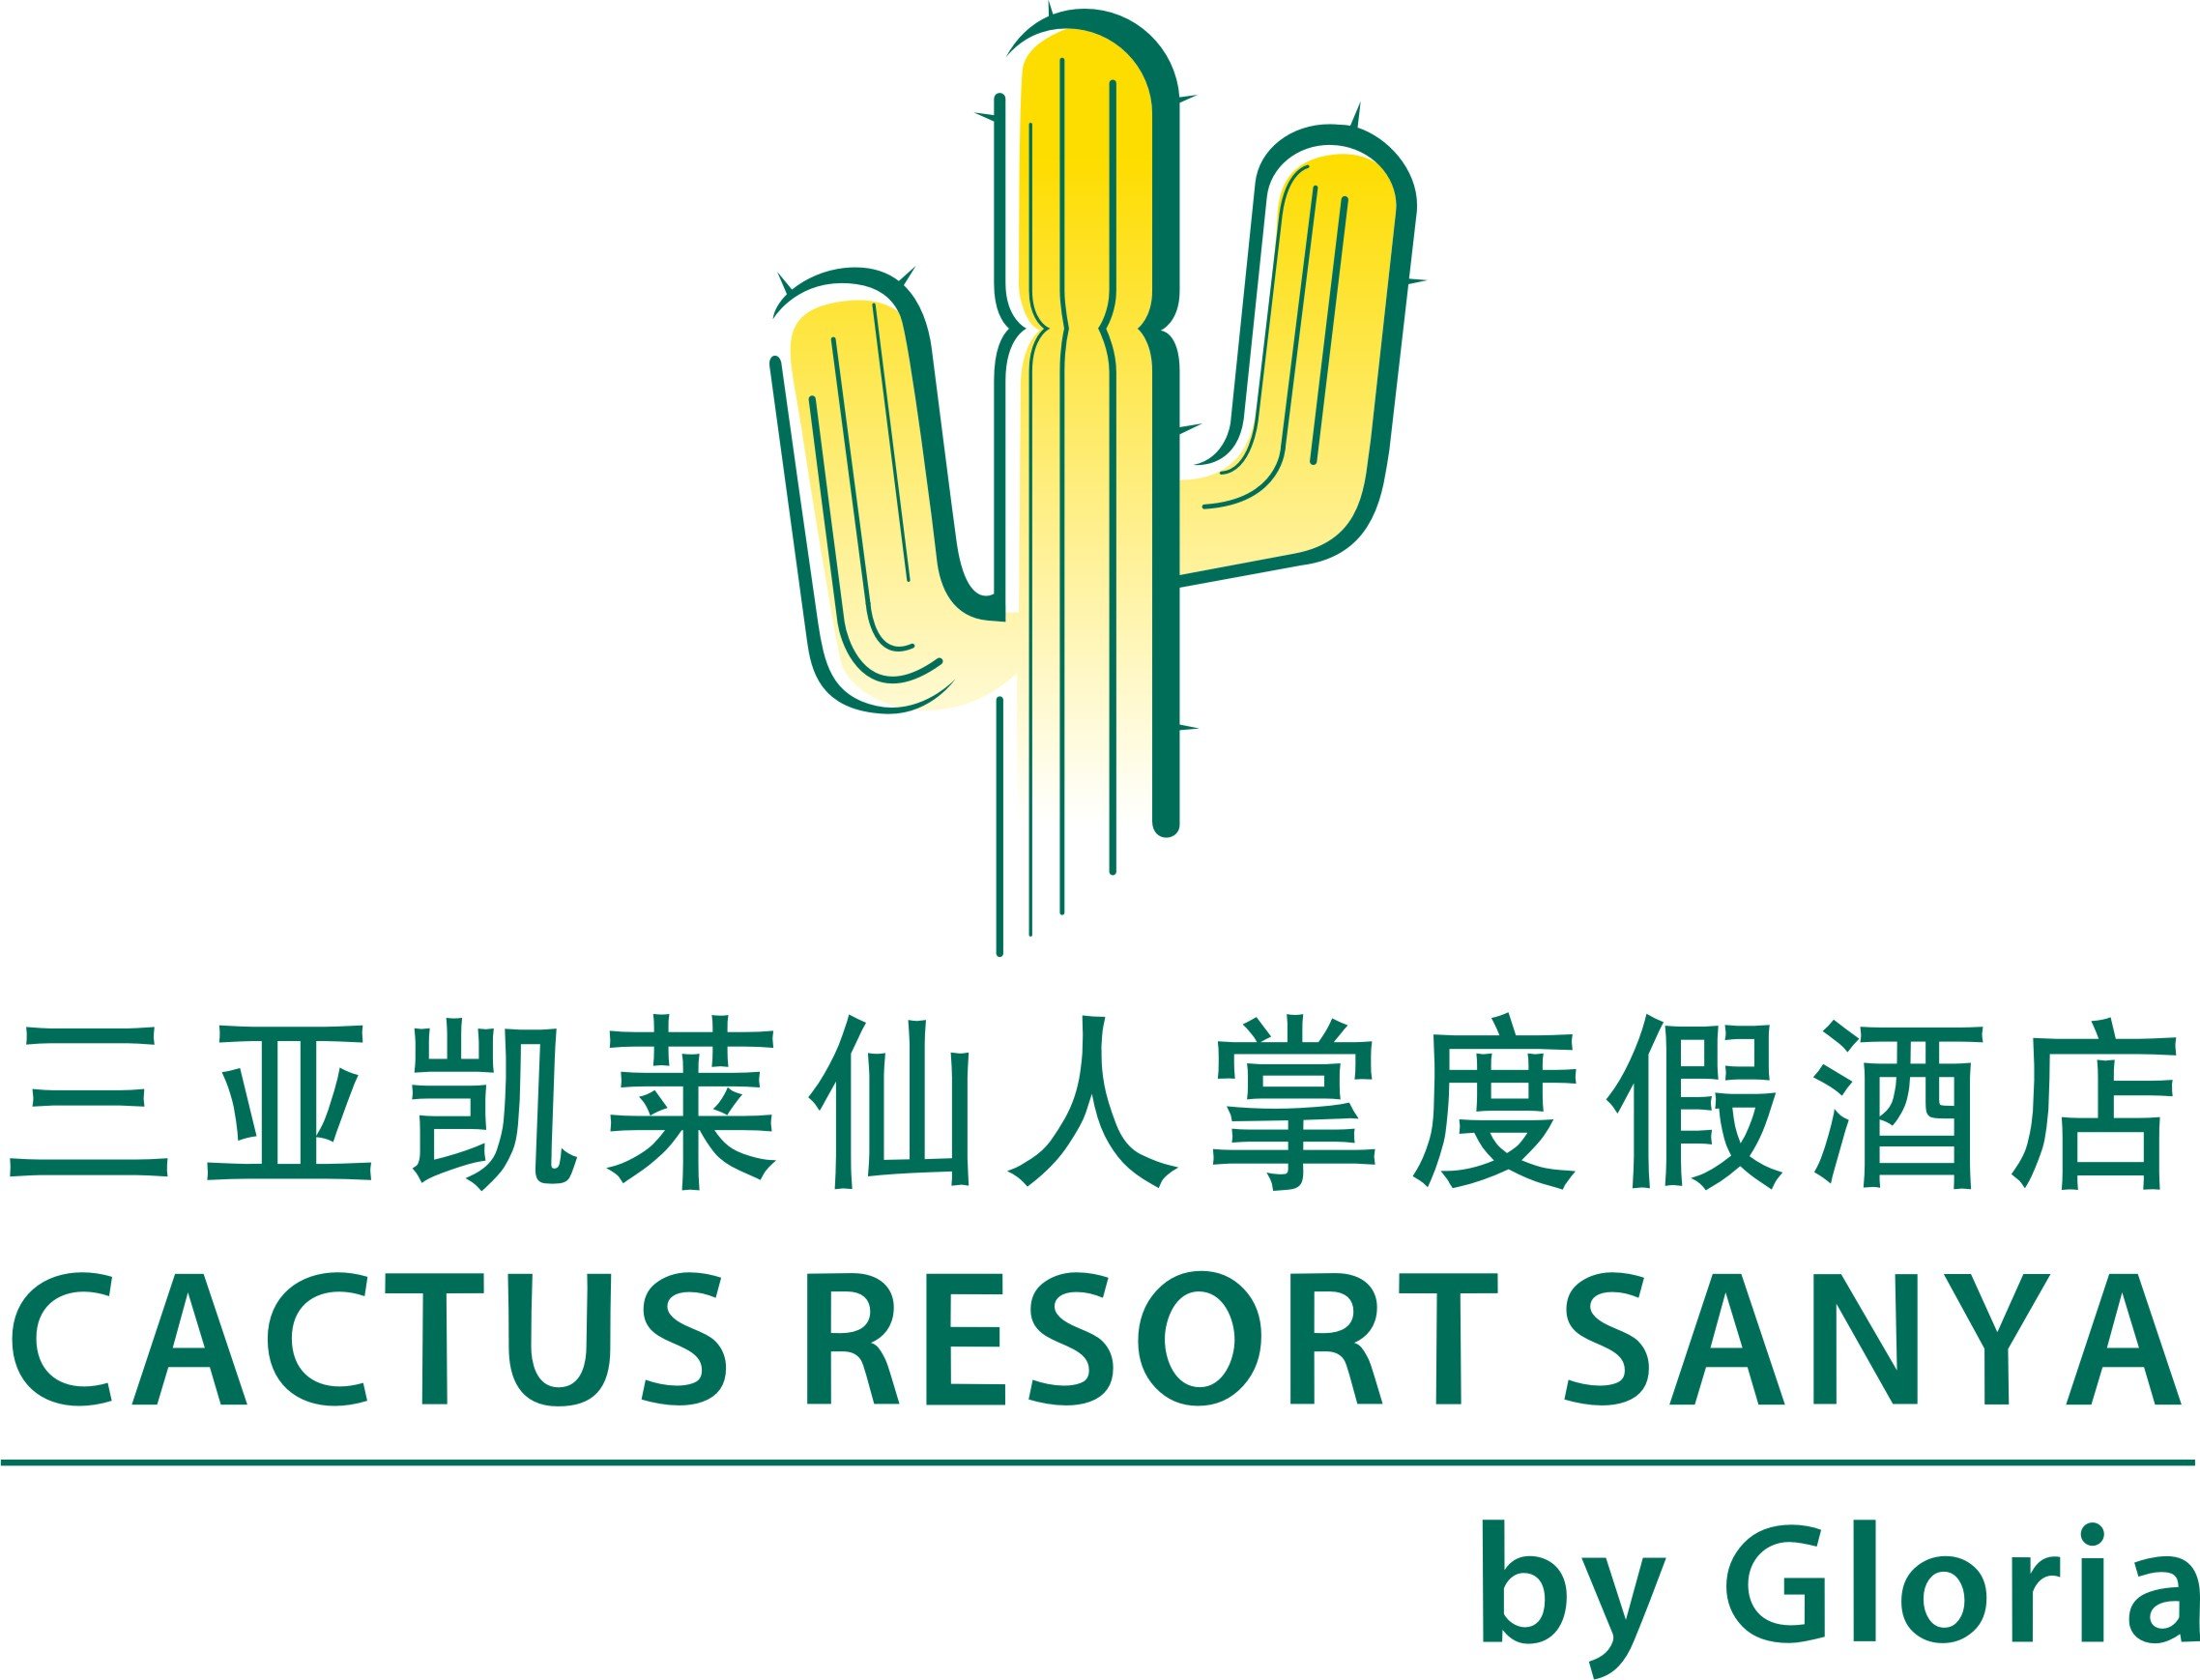 Cactus Resort Sanya By Gloria